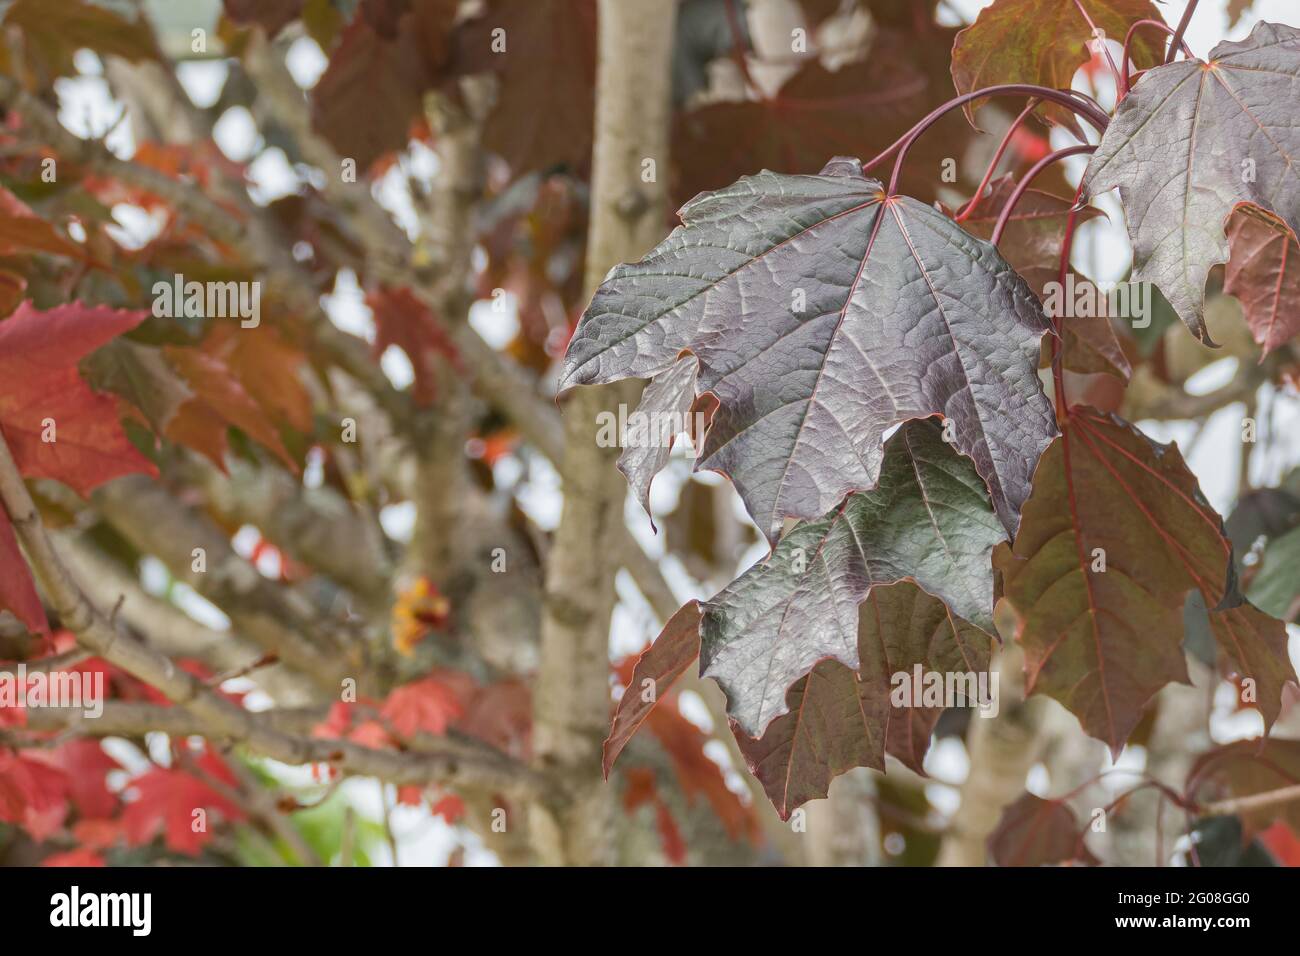 Norwegen Ahorn Crimson King Blatt wächst mit Tageslicht im späten Frühjahr im Freien Stockfoto